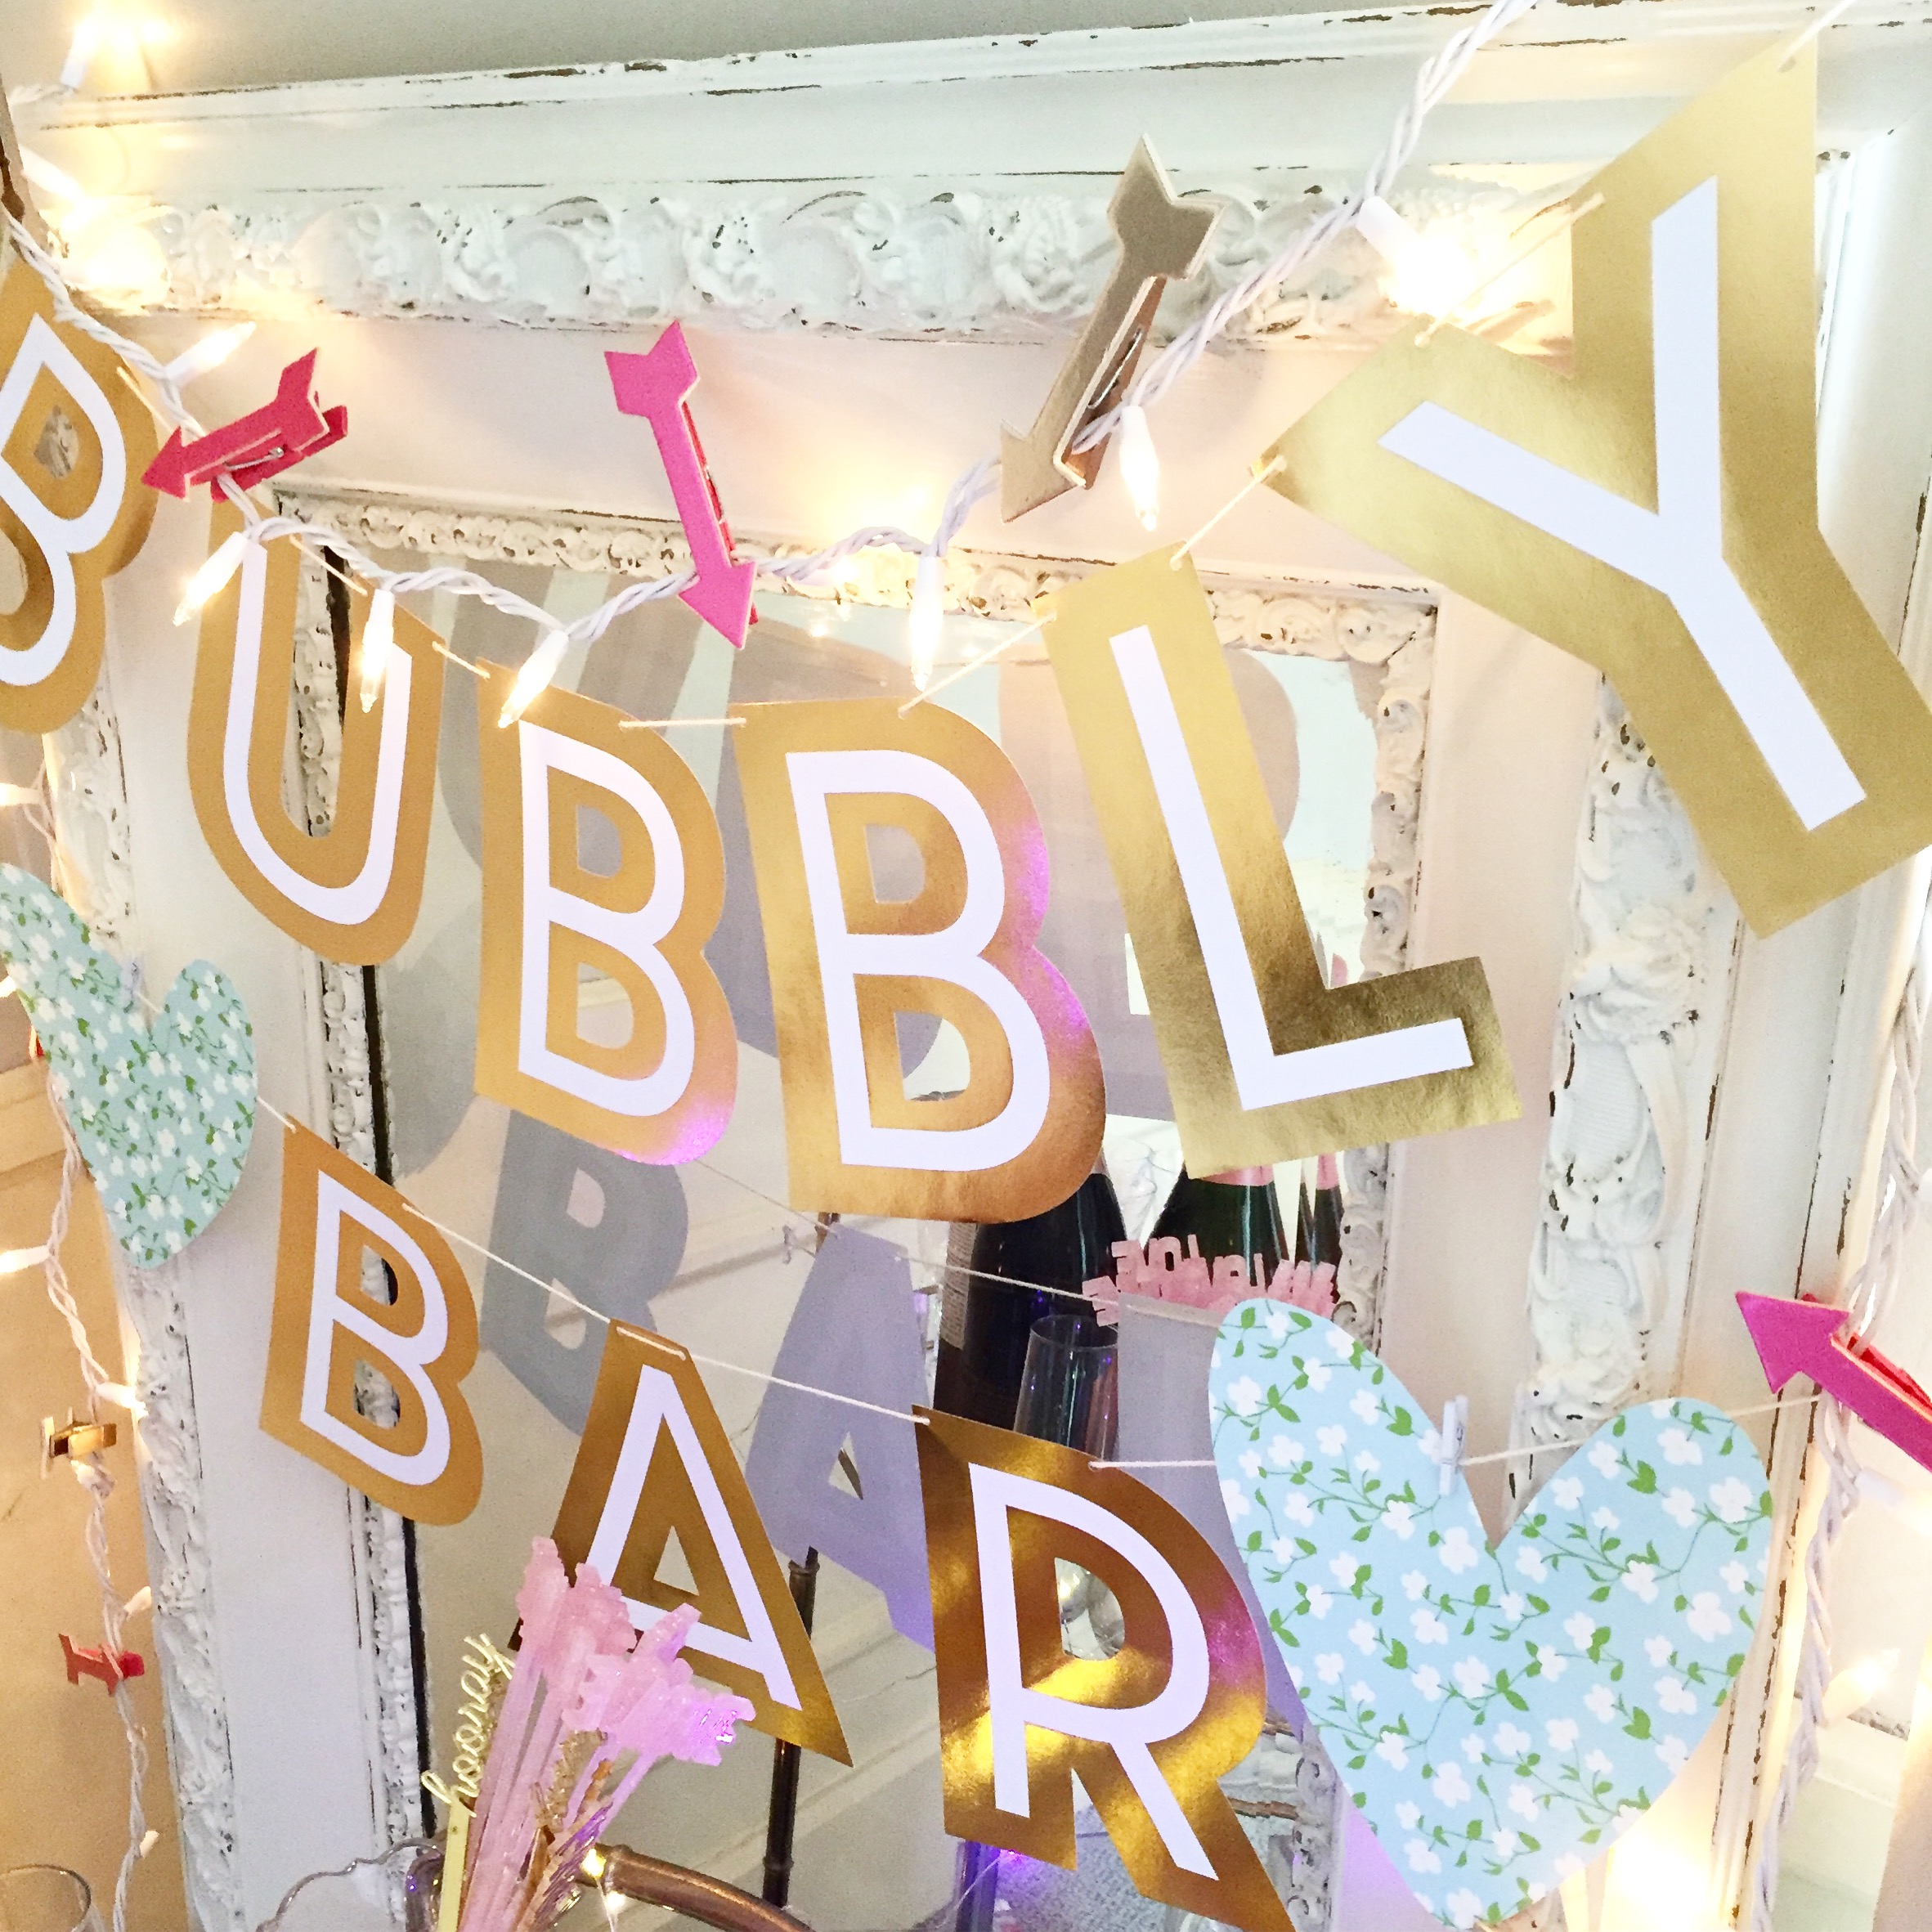 Bubbly bar